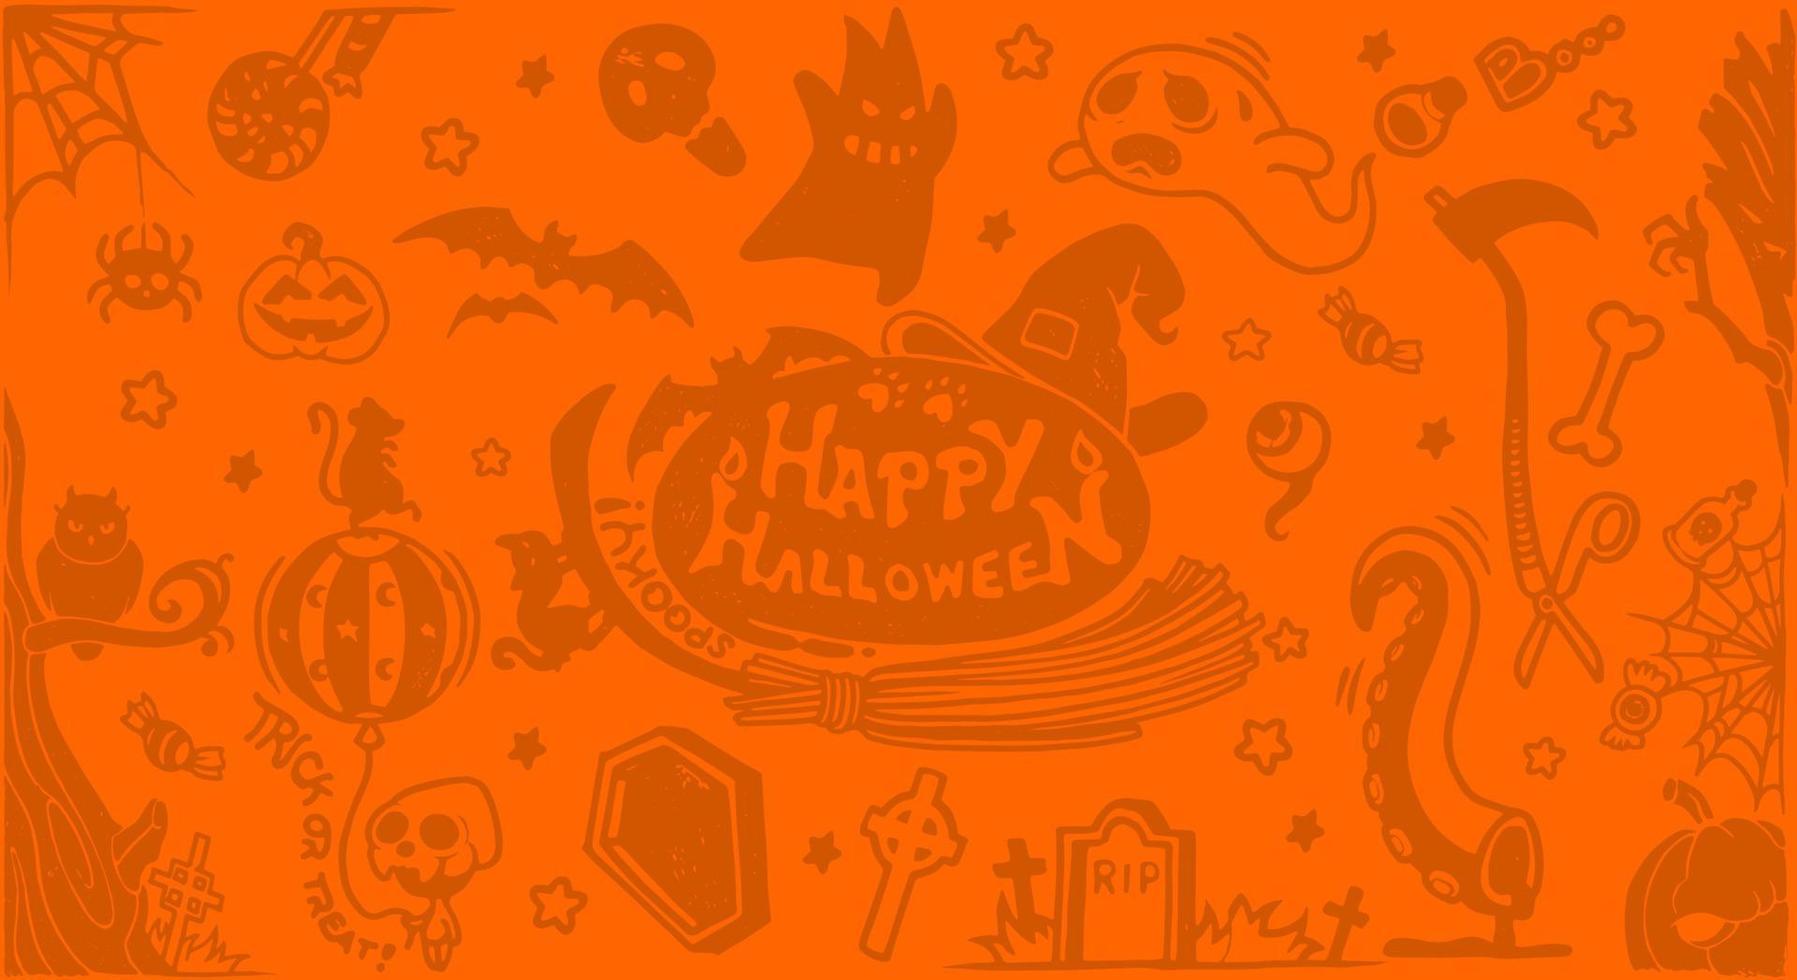 halloween symbolen voor achtergrond, achtergronden met pompoenen, schedels, vleermuizen, spinnen, geesten, botten, snoepjes, spin webben en veel meer. vector